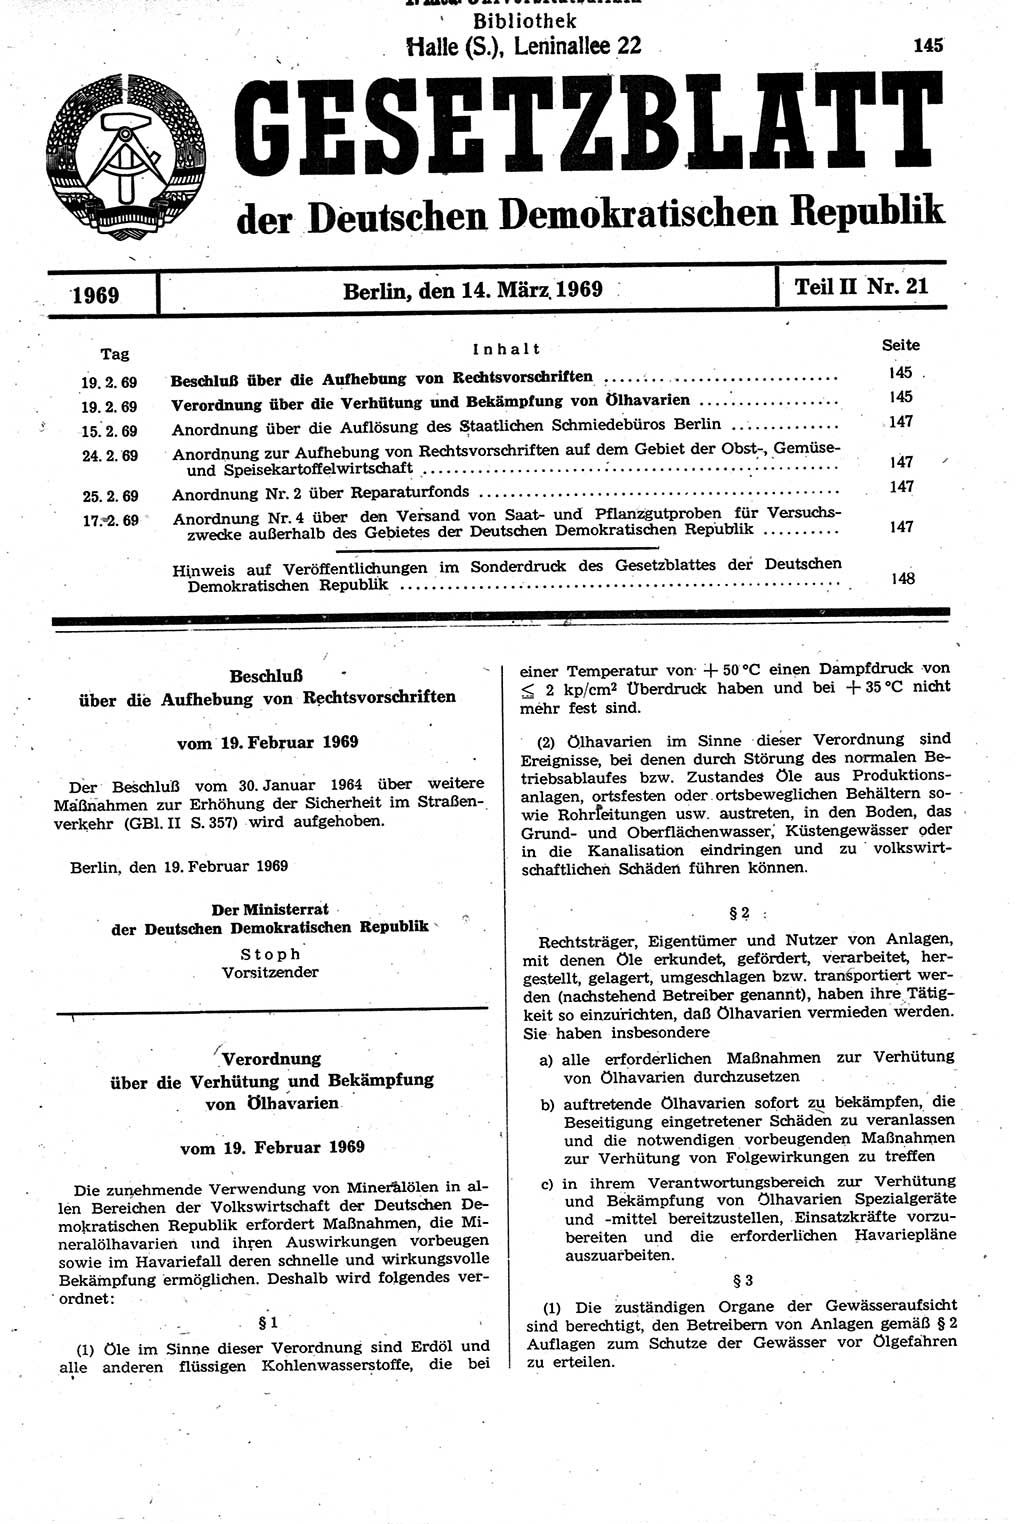 Gesetzblatt (GBl.) der Deutschen Demokratischen Republik (DDR) Teil ⅠⅠ 1969, Seite 145 (GBl. DDR ⅠⅠ 1969, S. 145)